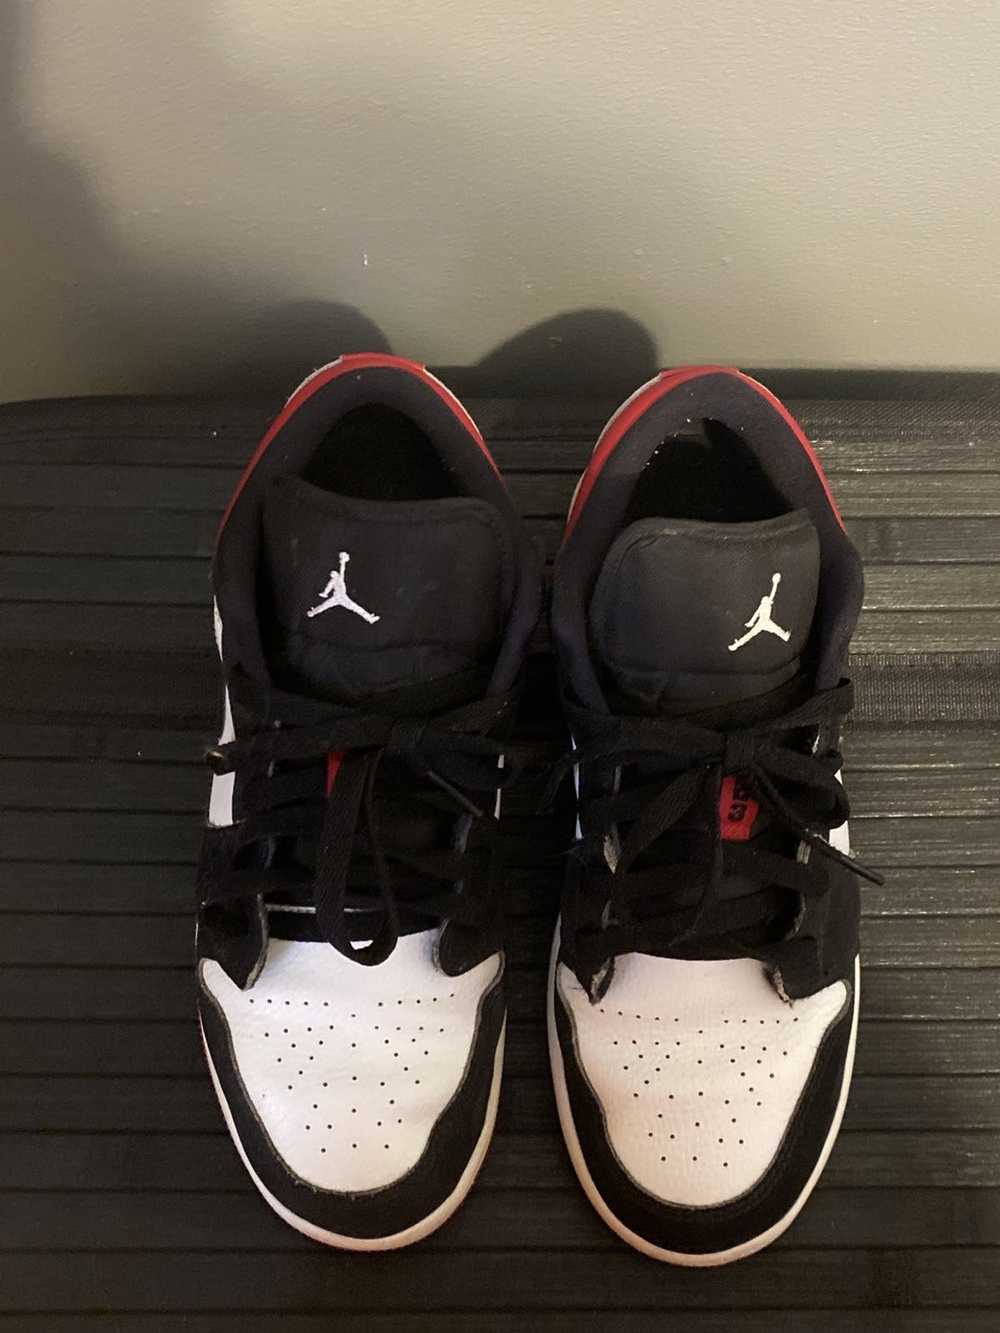 Jordan Brand × Nike Air Jordan 1 Low Bred Toe - image 7